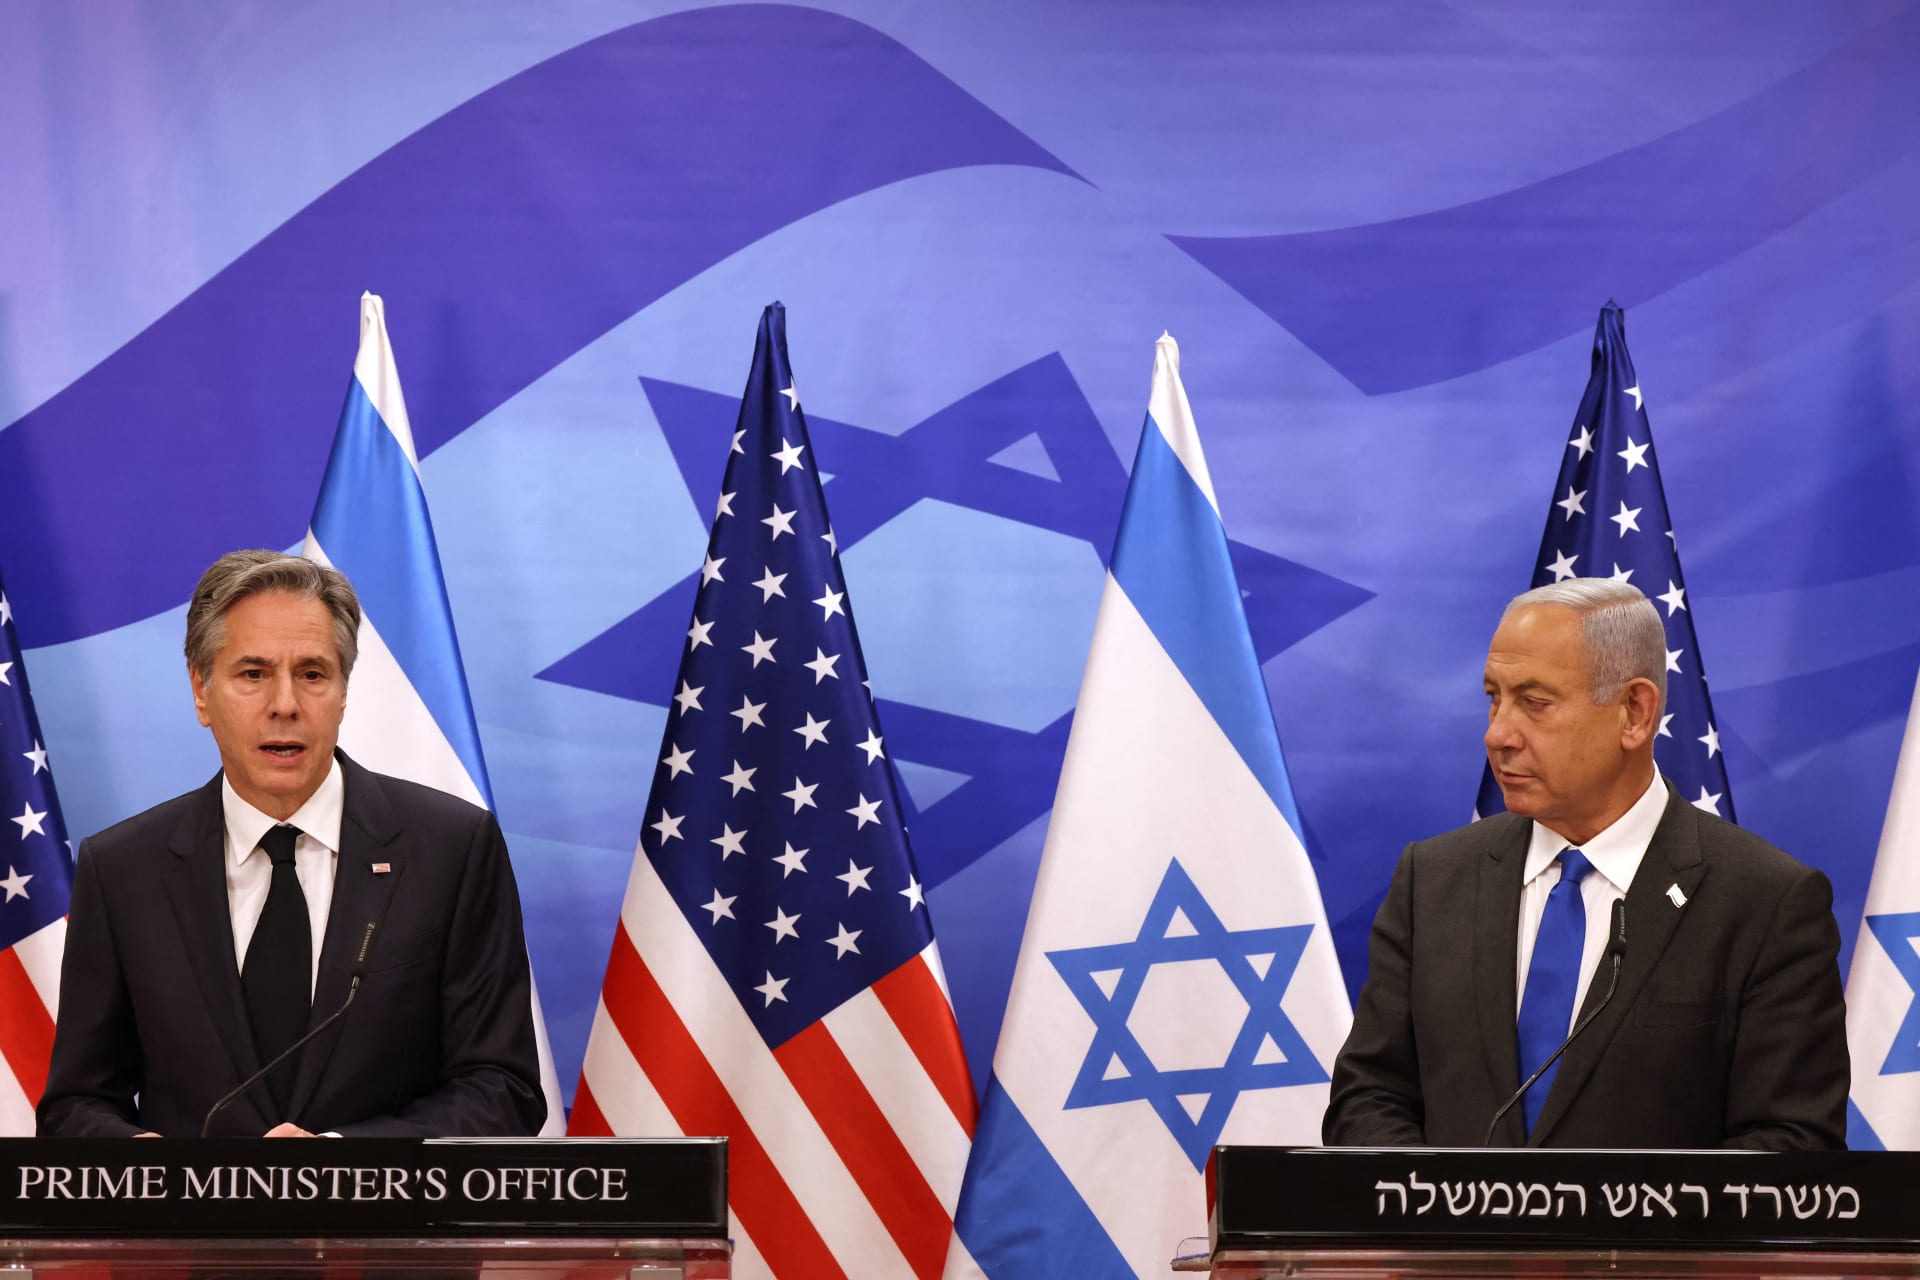 بعد زيارة السعودية.. بلينكن يبحث مع نتنياهو "تعزيز اندماج إسرائيل في المنطقة"